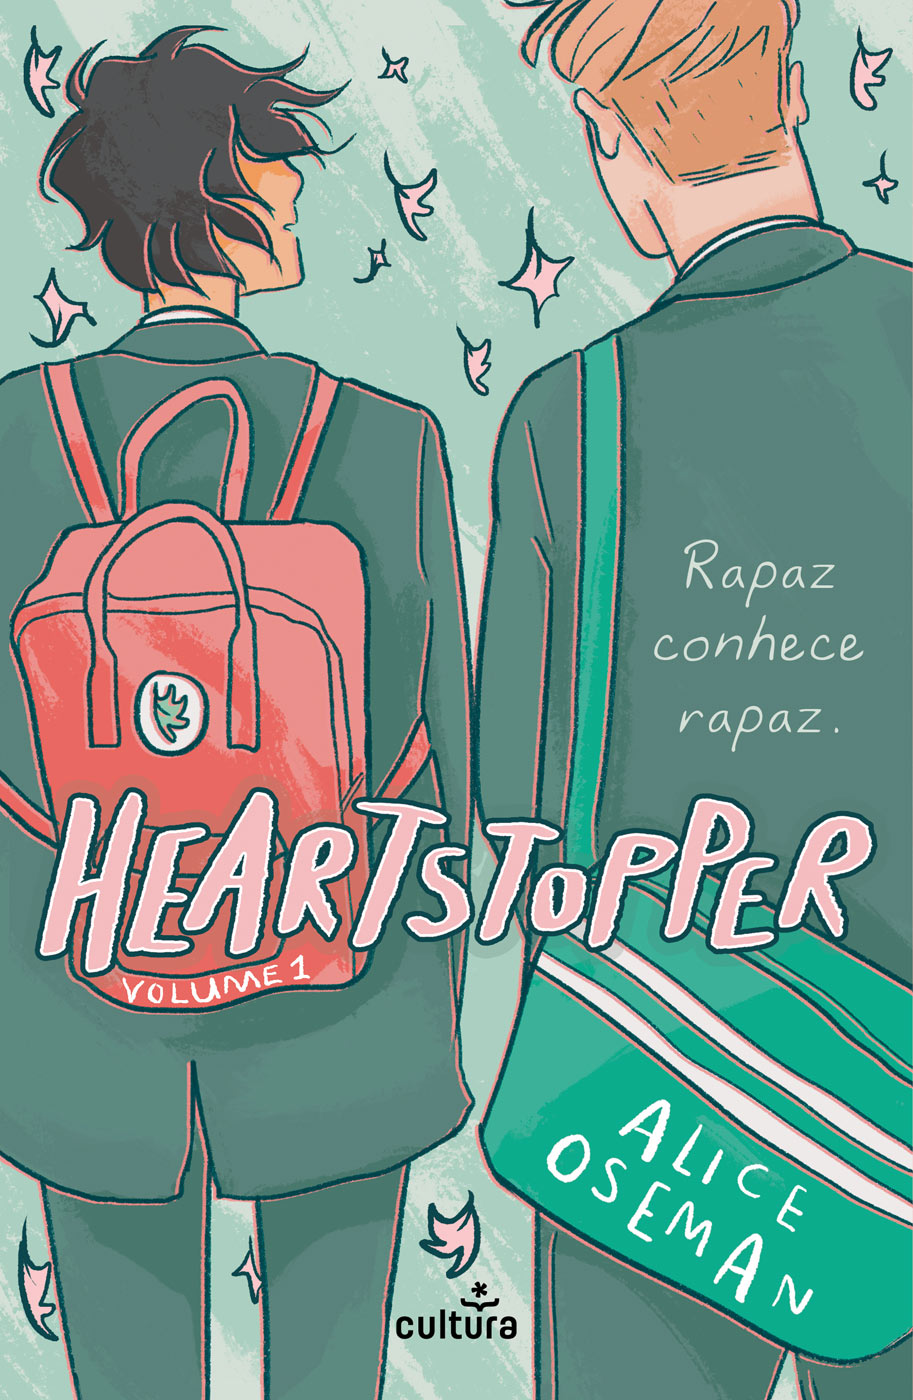 Heartstopper volume 1